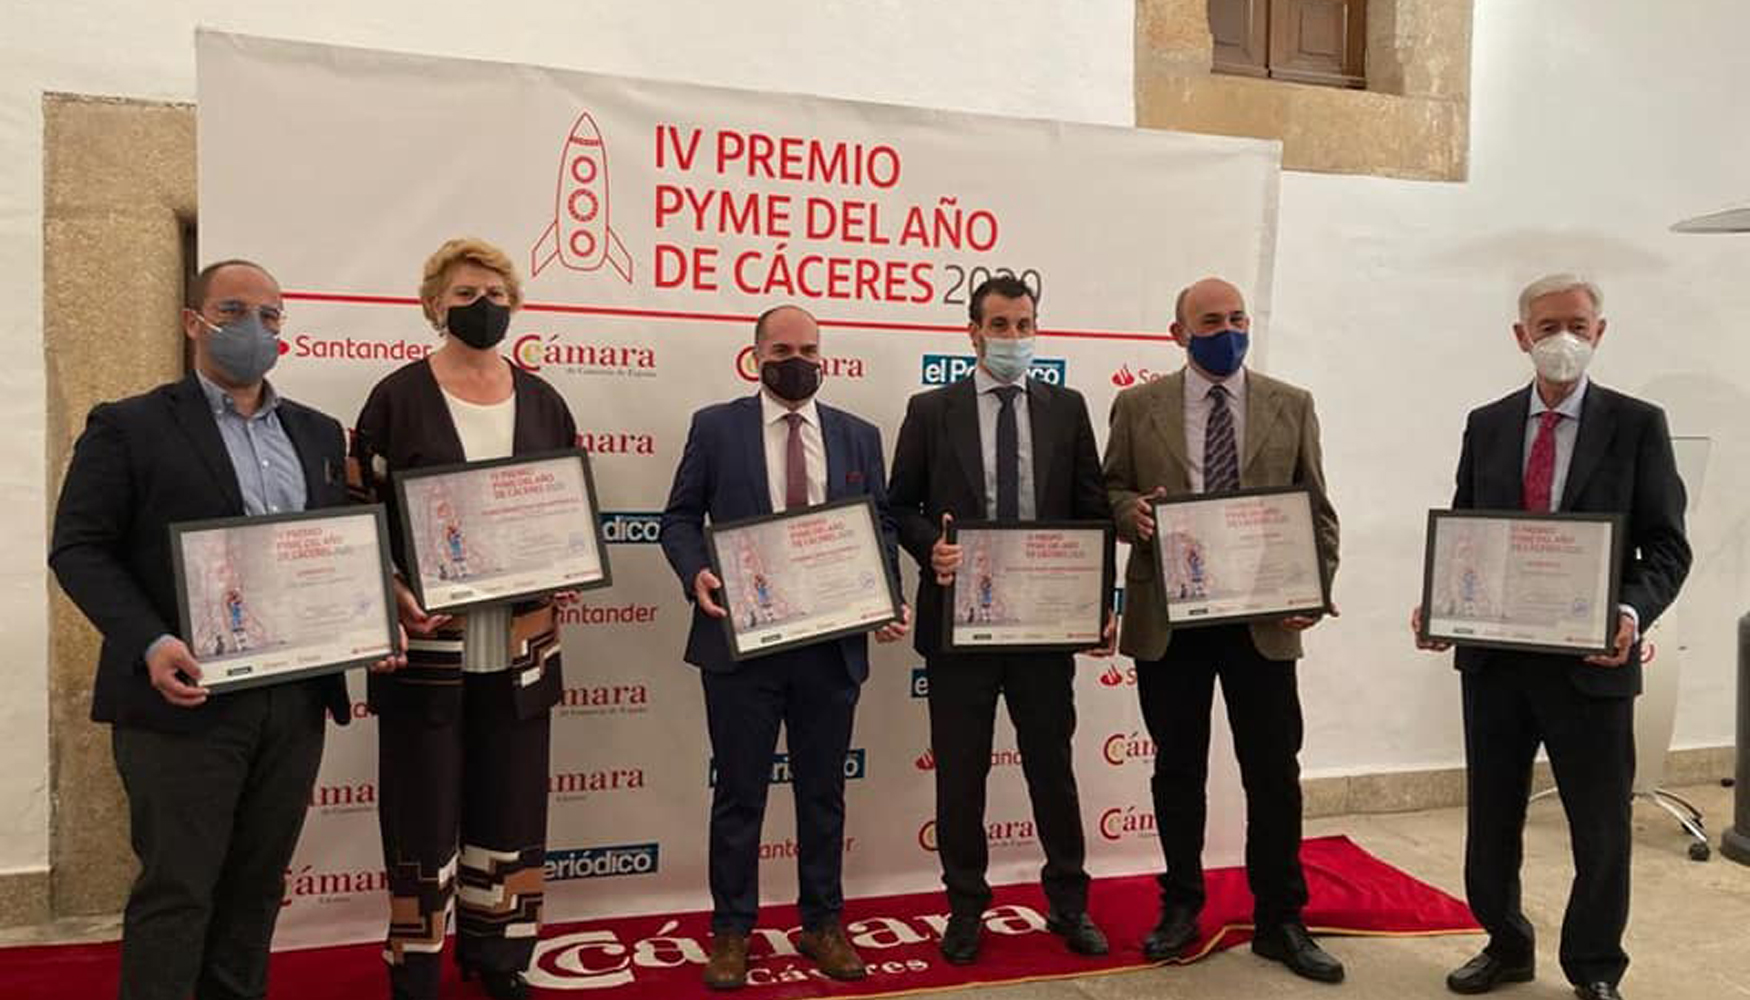 Foto de familia con los galardonados en los Premios Pyme del Ao 2020 de Cceres